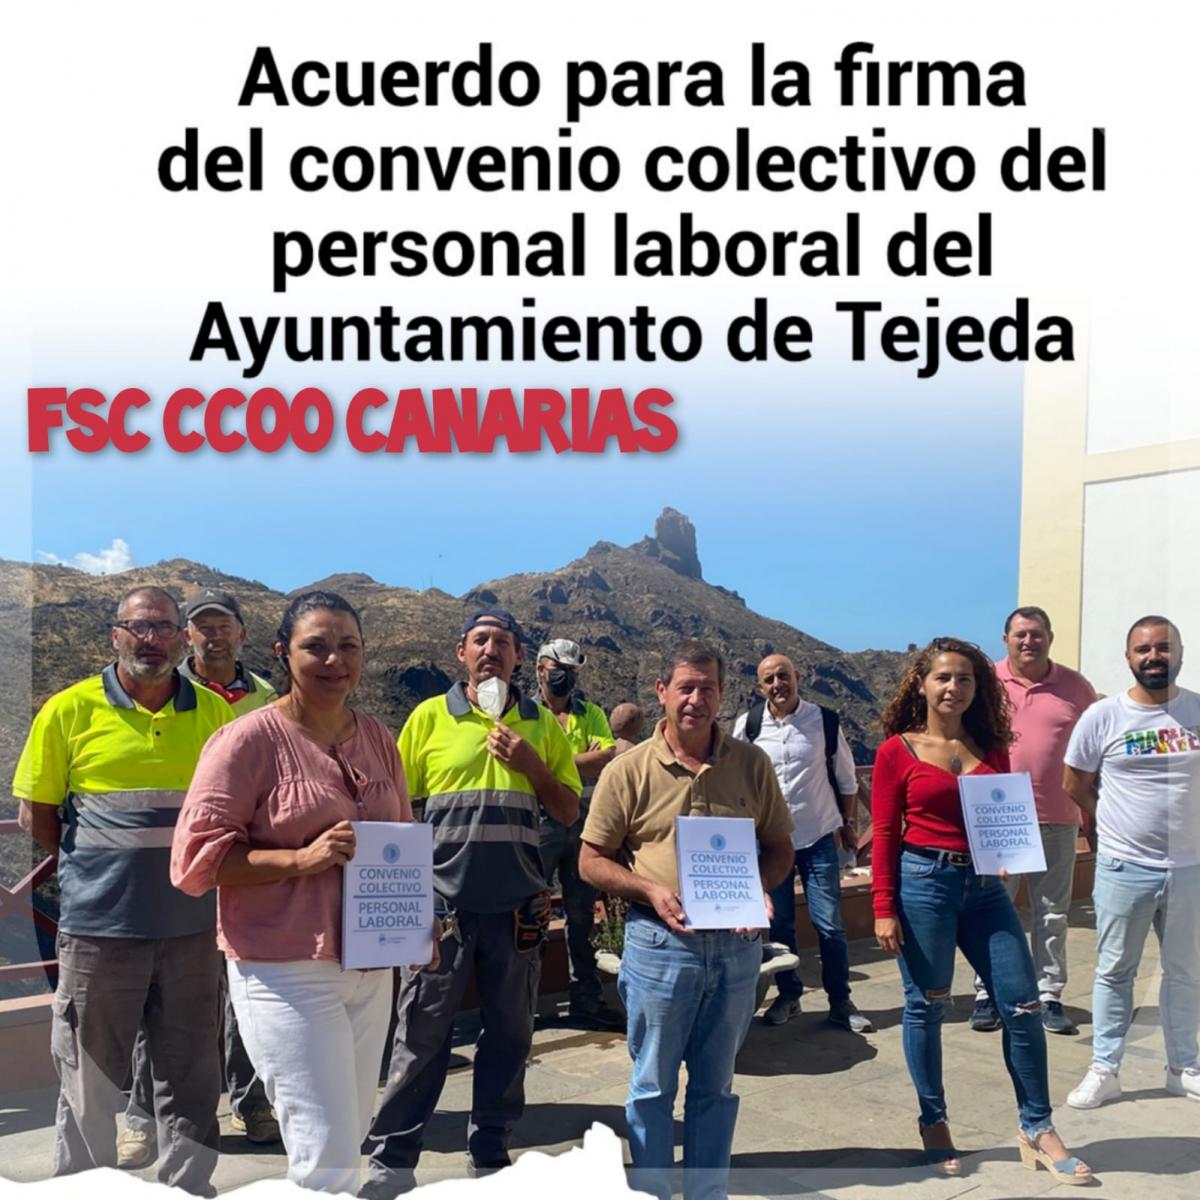 Acuerdo para la firma del Convenio Colectivo del personal laboral del Ayuntamiento de Tejeda